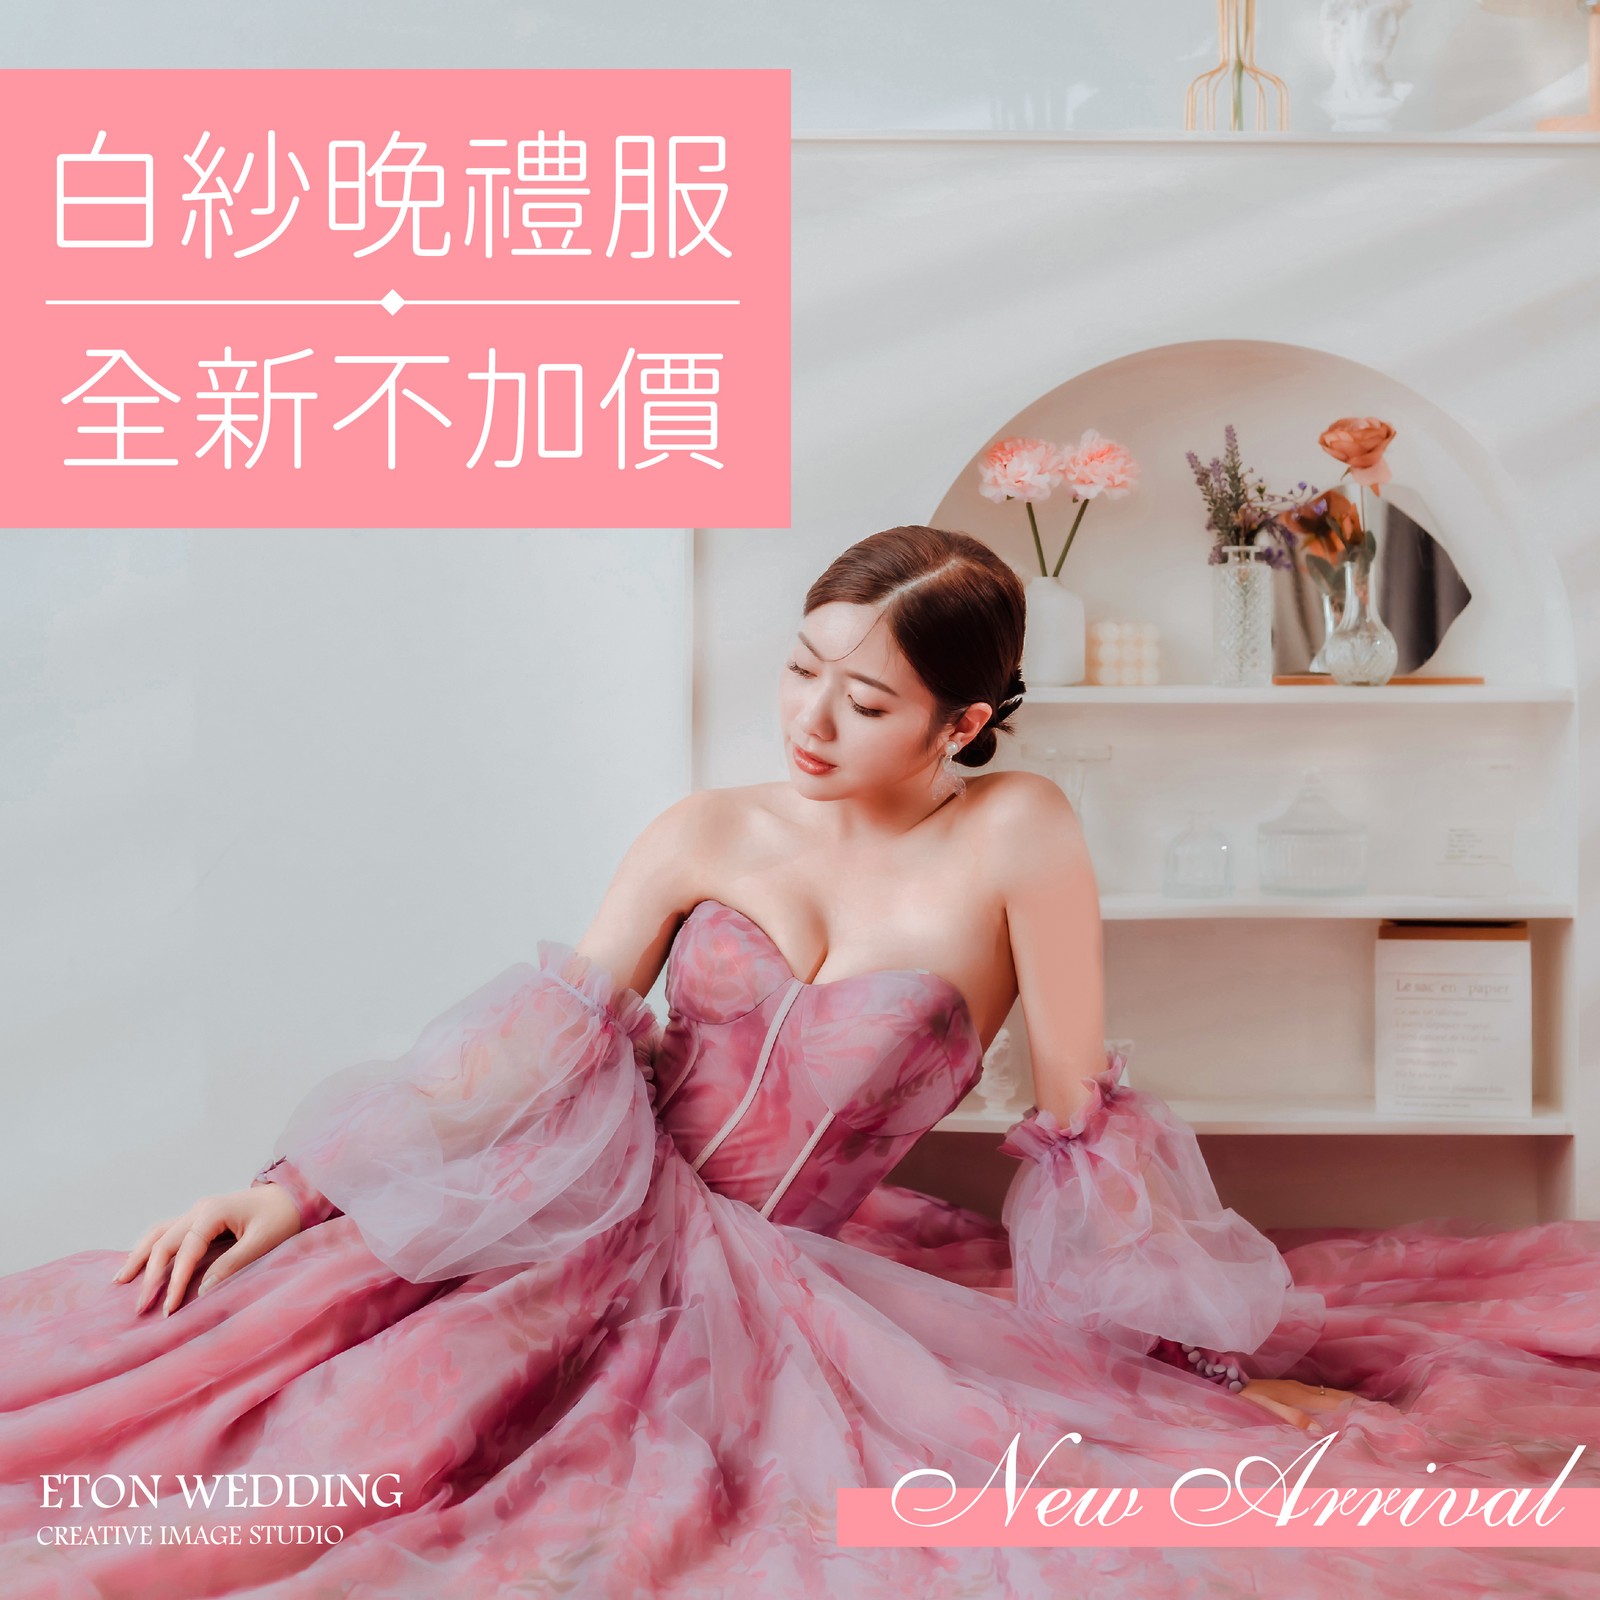 台南 2022婚紗,台南婚紗工作室,2022禮服 台南,2022婚紗推薦 台南